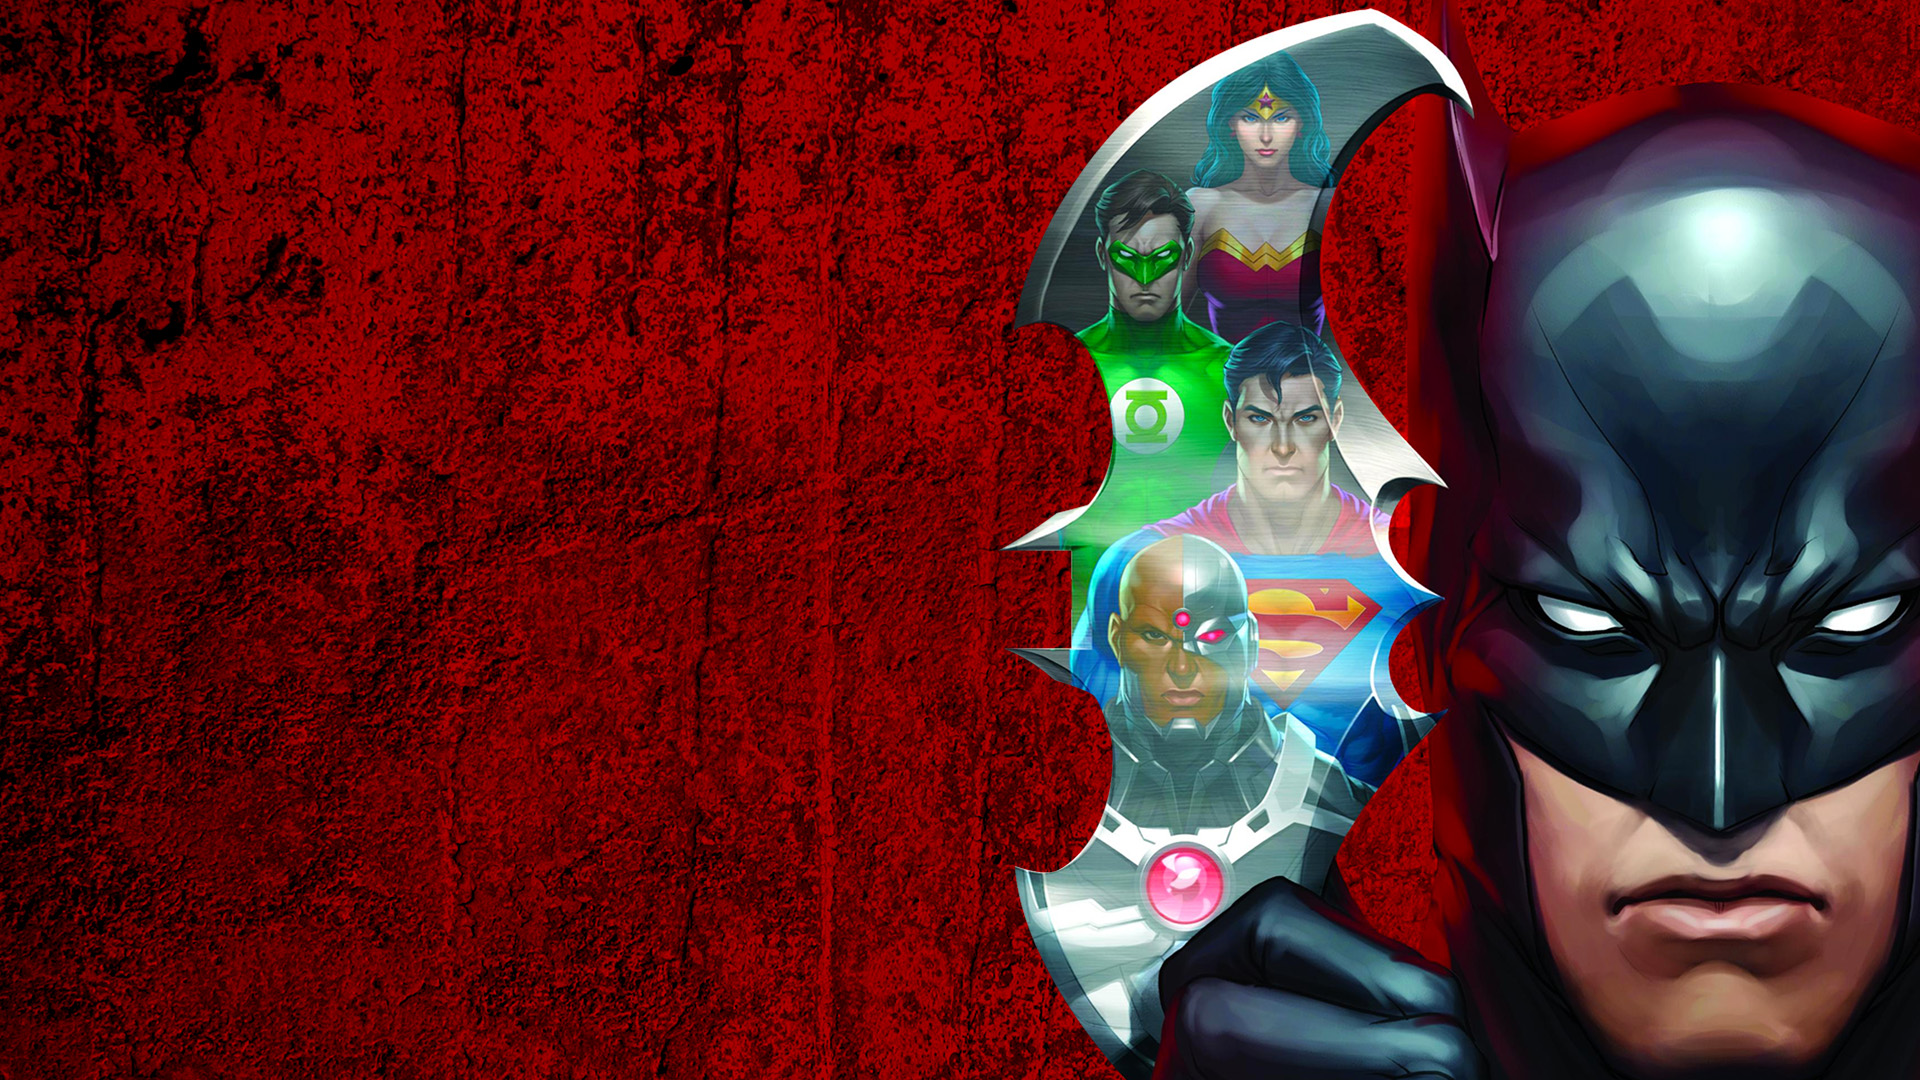 fond d'écran justice league,personnage fictif,super héros,supervillain,homme chauve souris,ligue de justice